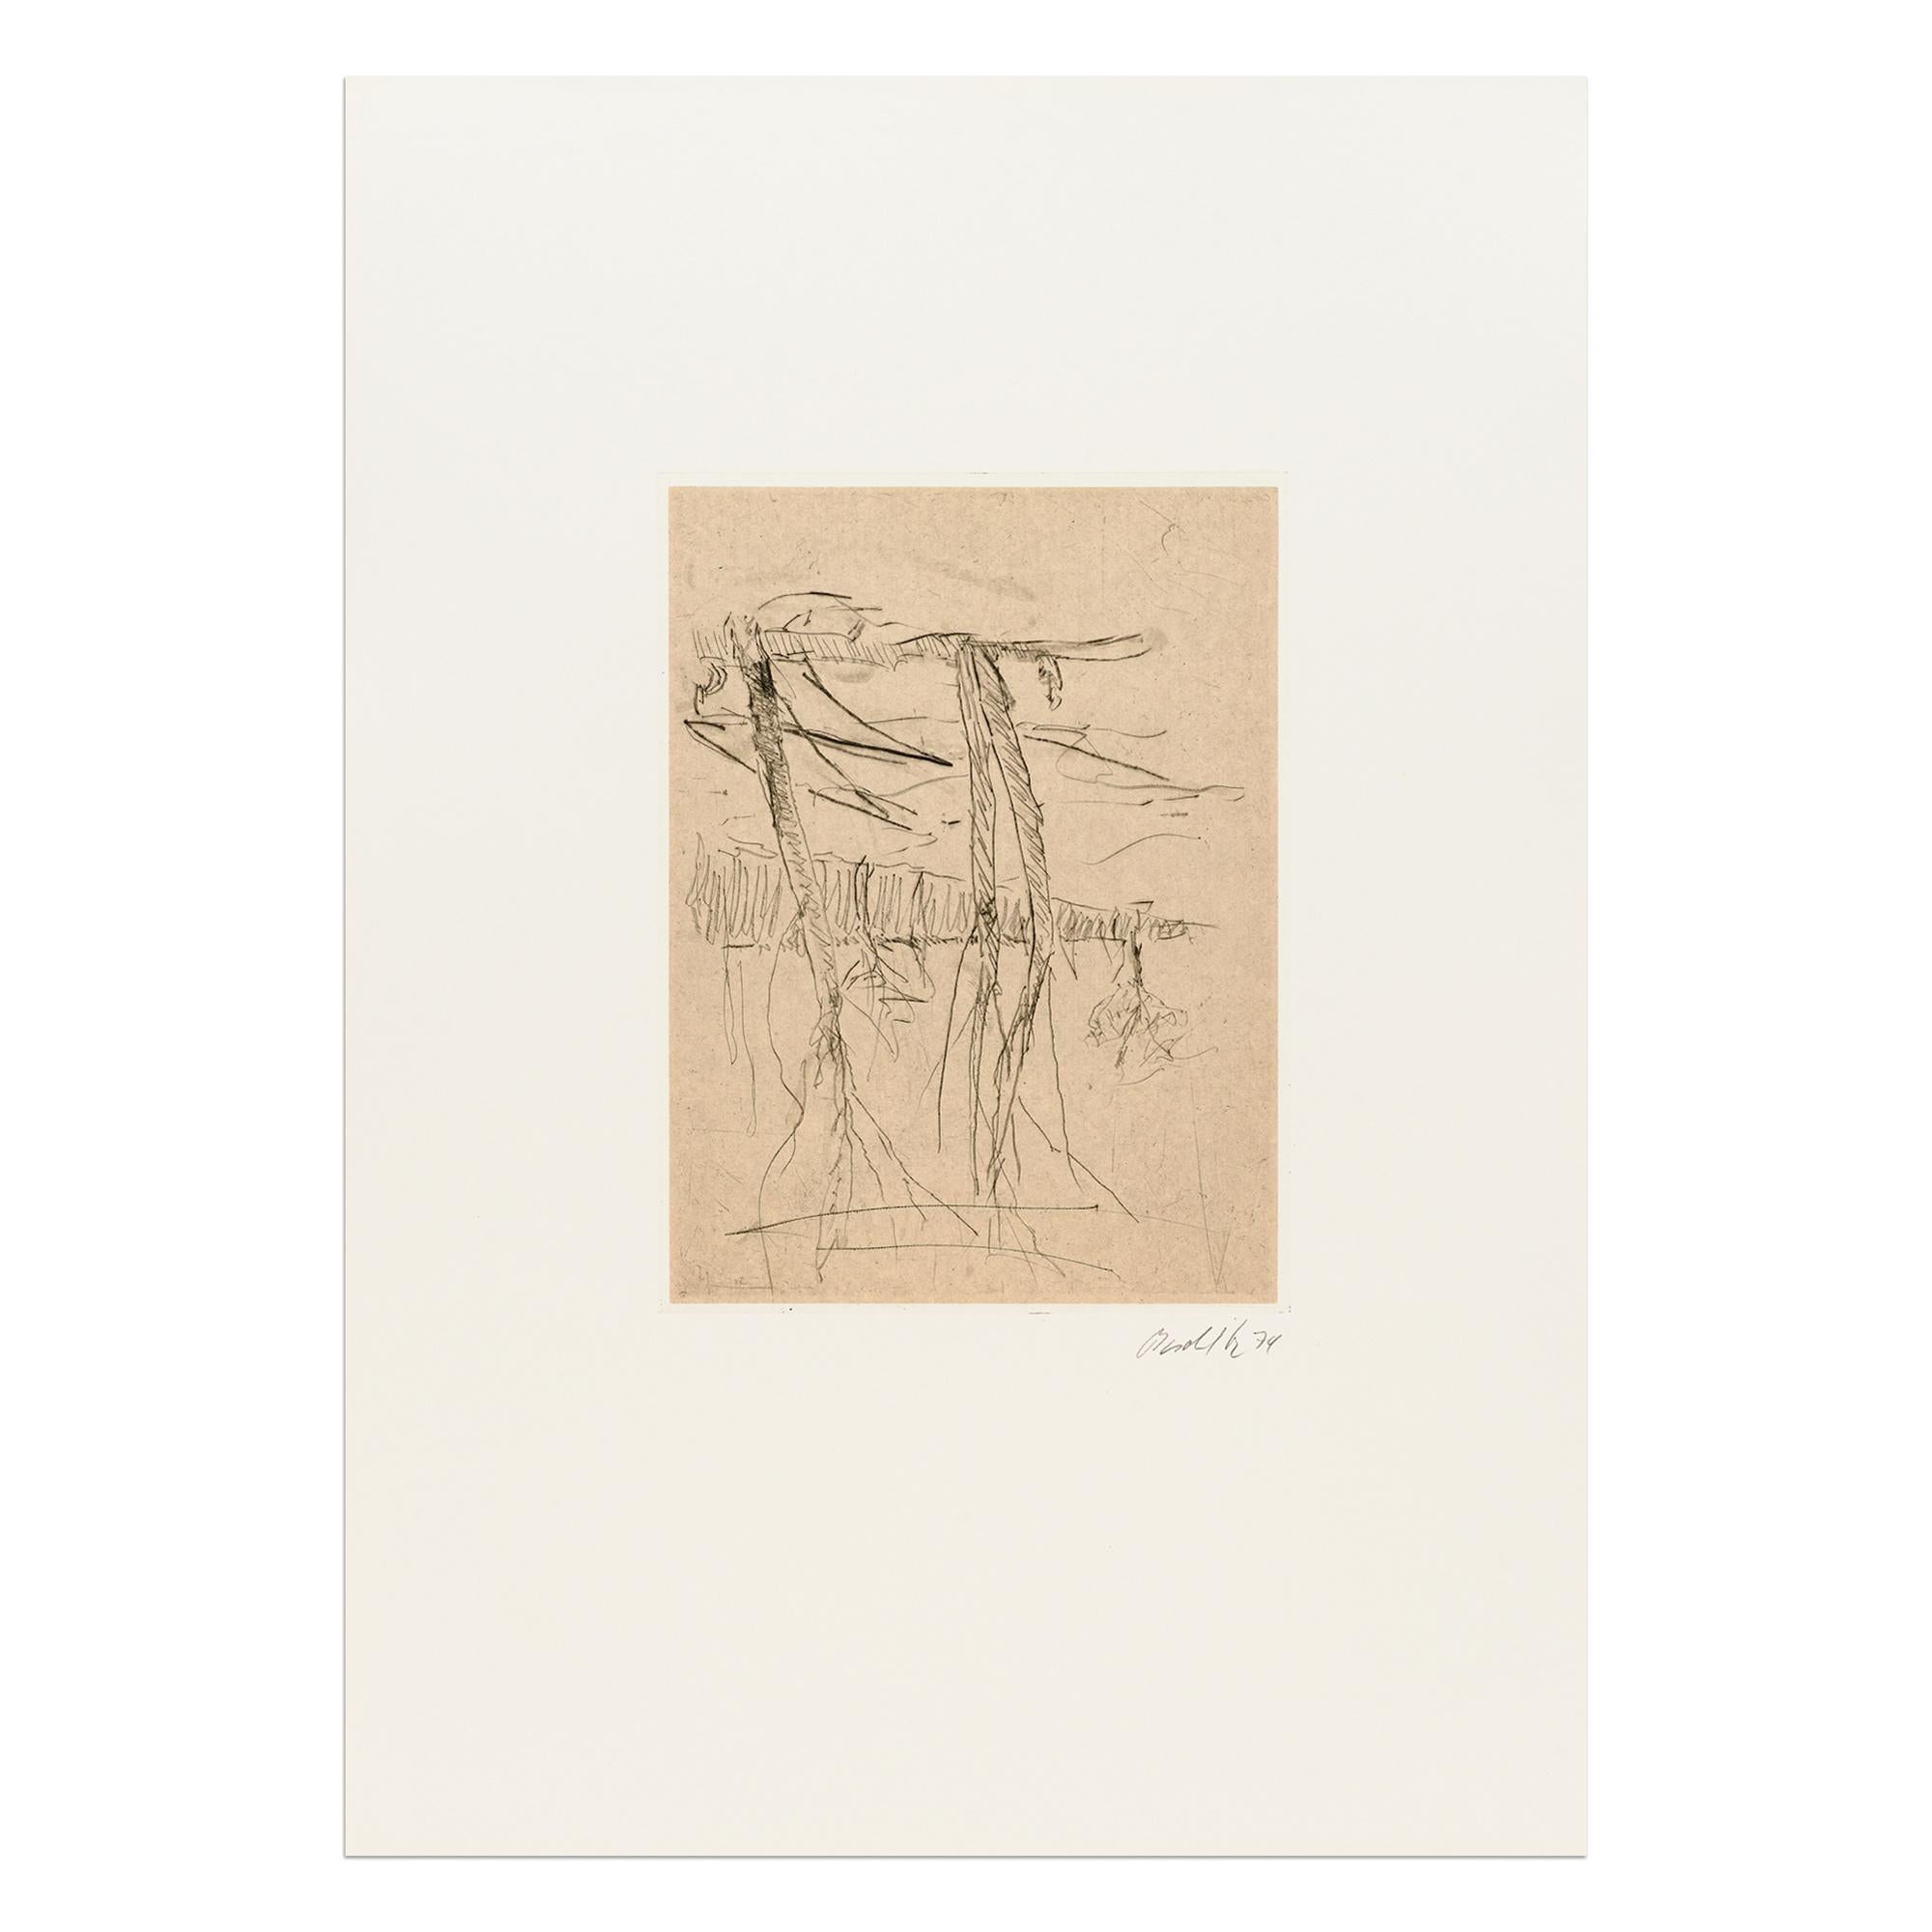 Georg Baselitz (Deutscher, geboren 1938)
Bäume, 1974/75
Medium: Radierung und Aquatinta auf Papier
Abmessungen: 70 × 50 cm (27 3/5 × 19 7/10 in)
Auflage von 30 Stück: handsigniert und nummeriert